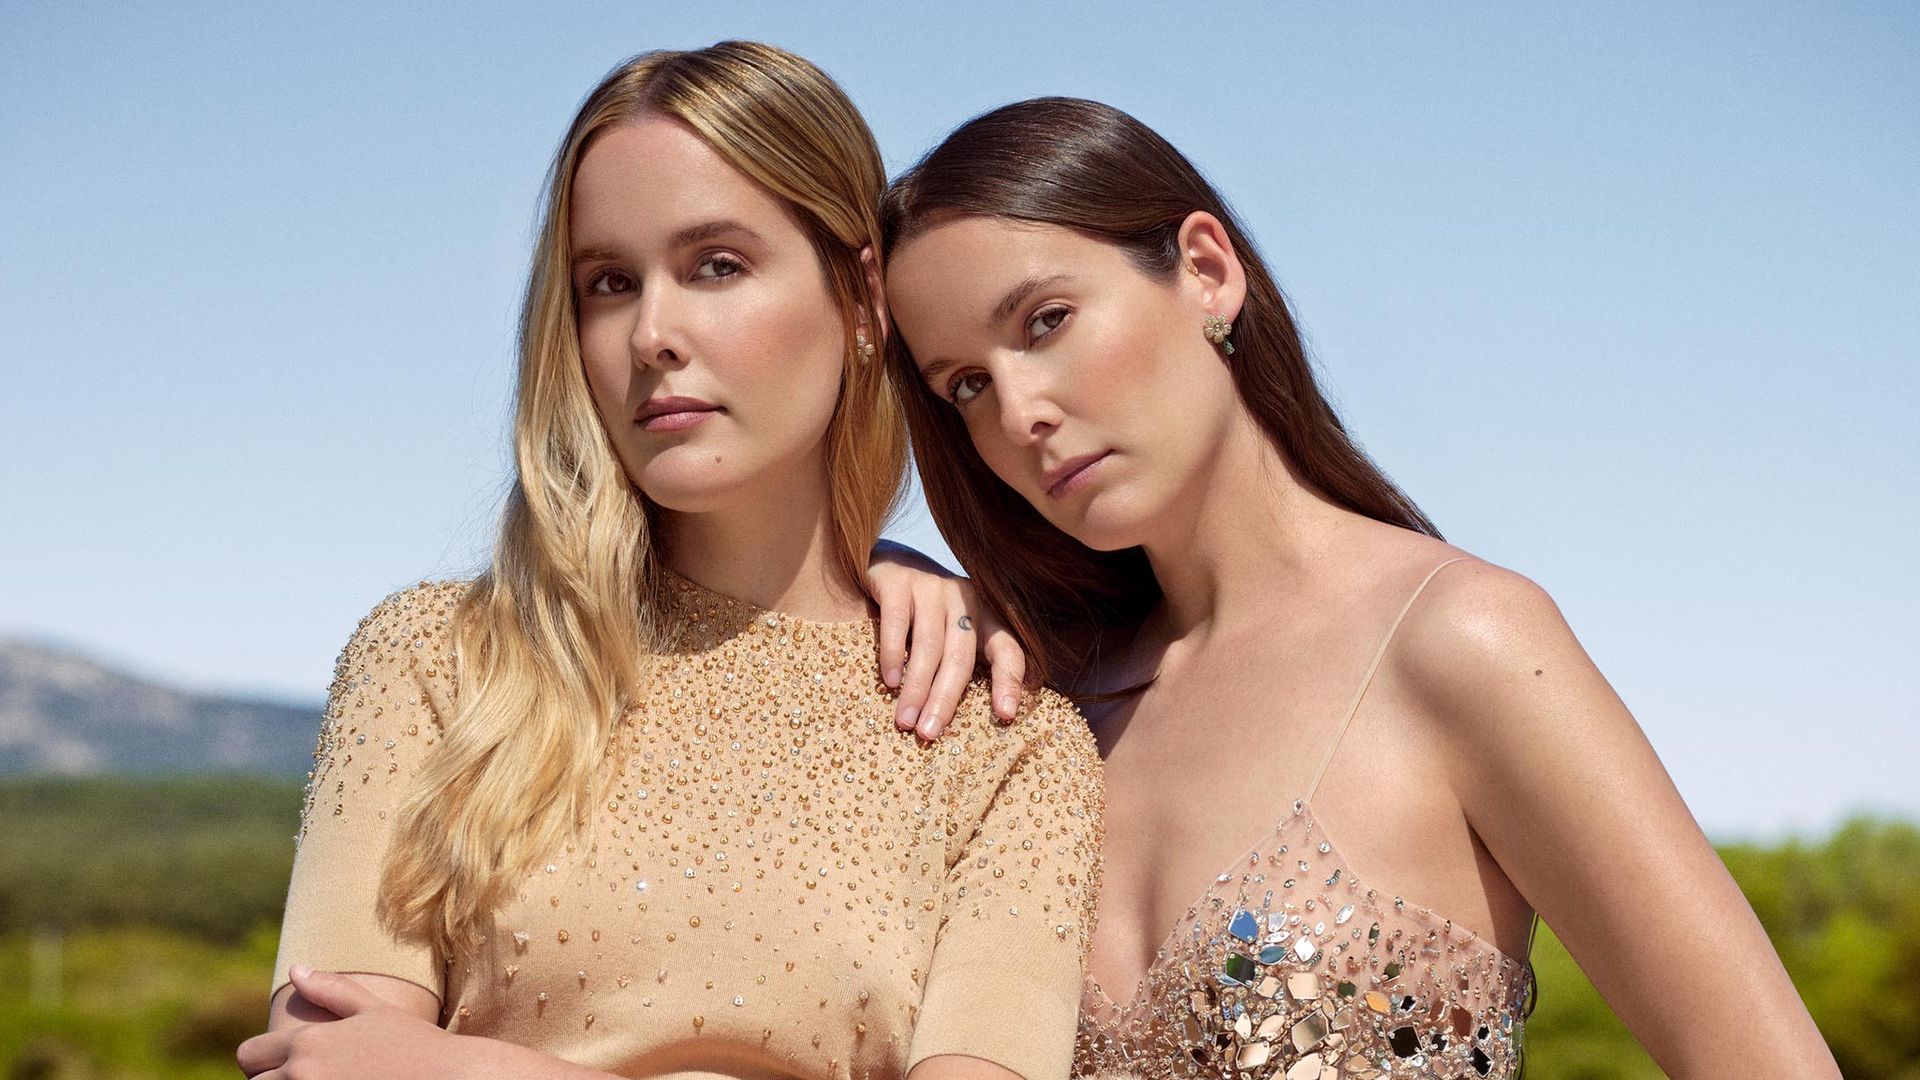 En ¡HOLA!, Lucía y Helena Cuesta, dos gemelas de moda en el mundo del diseño, dan la bienvenida al verano con estilo y personalidad